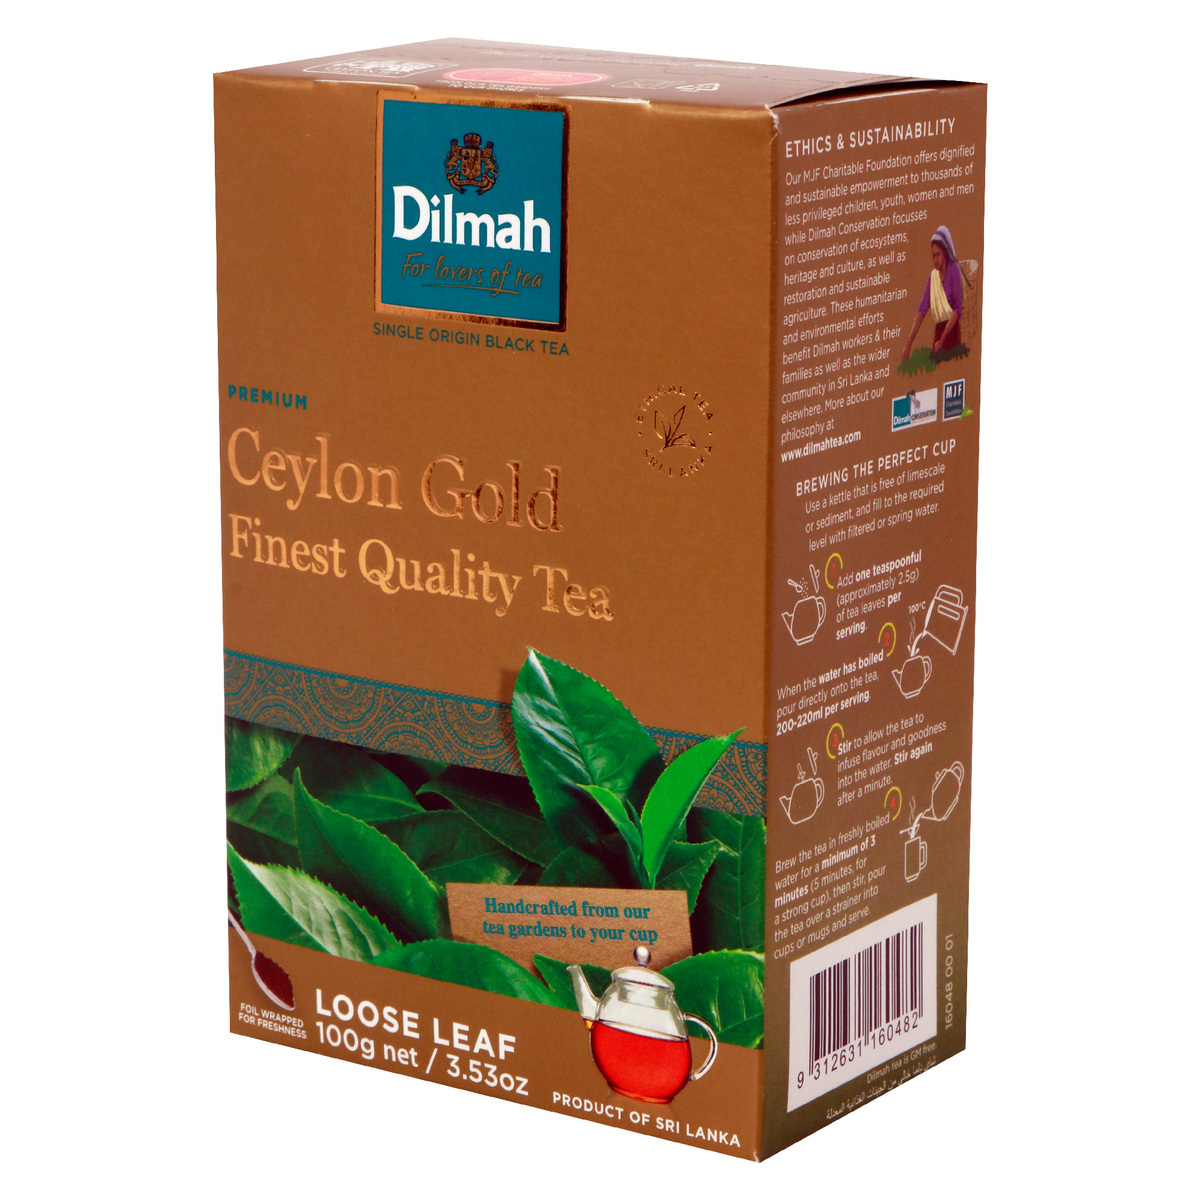 Dilmah Premium Ceylon Gold Tea 100g